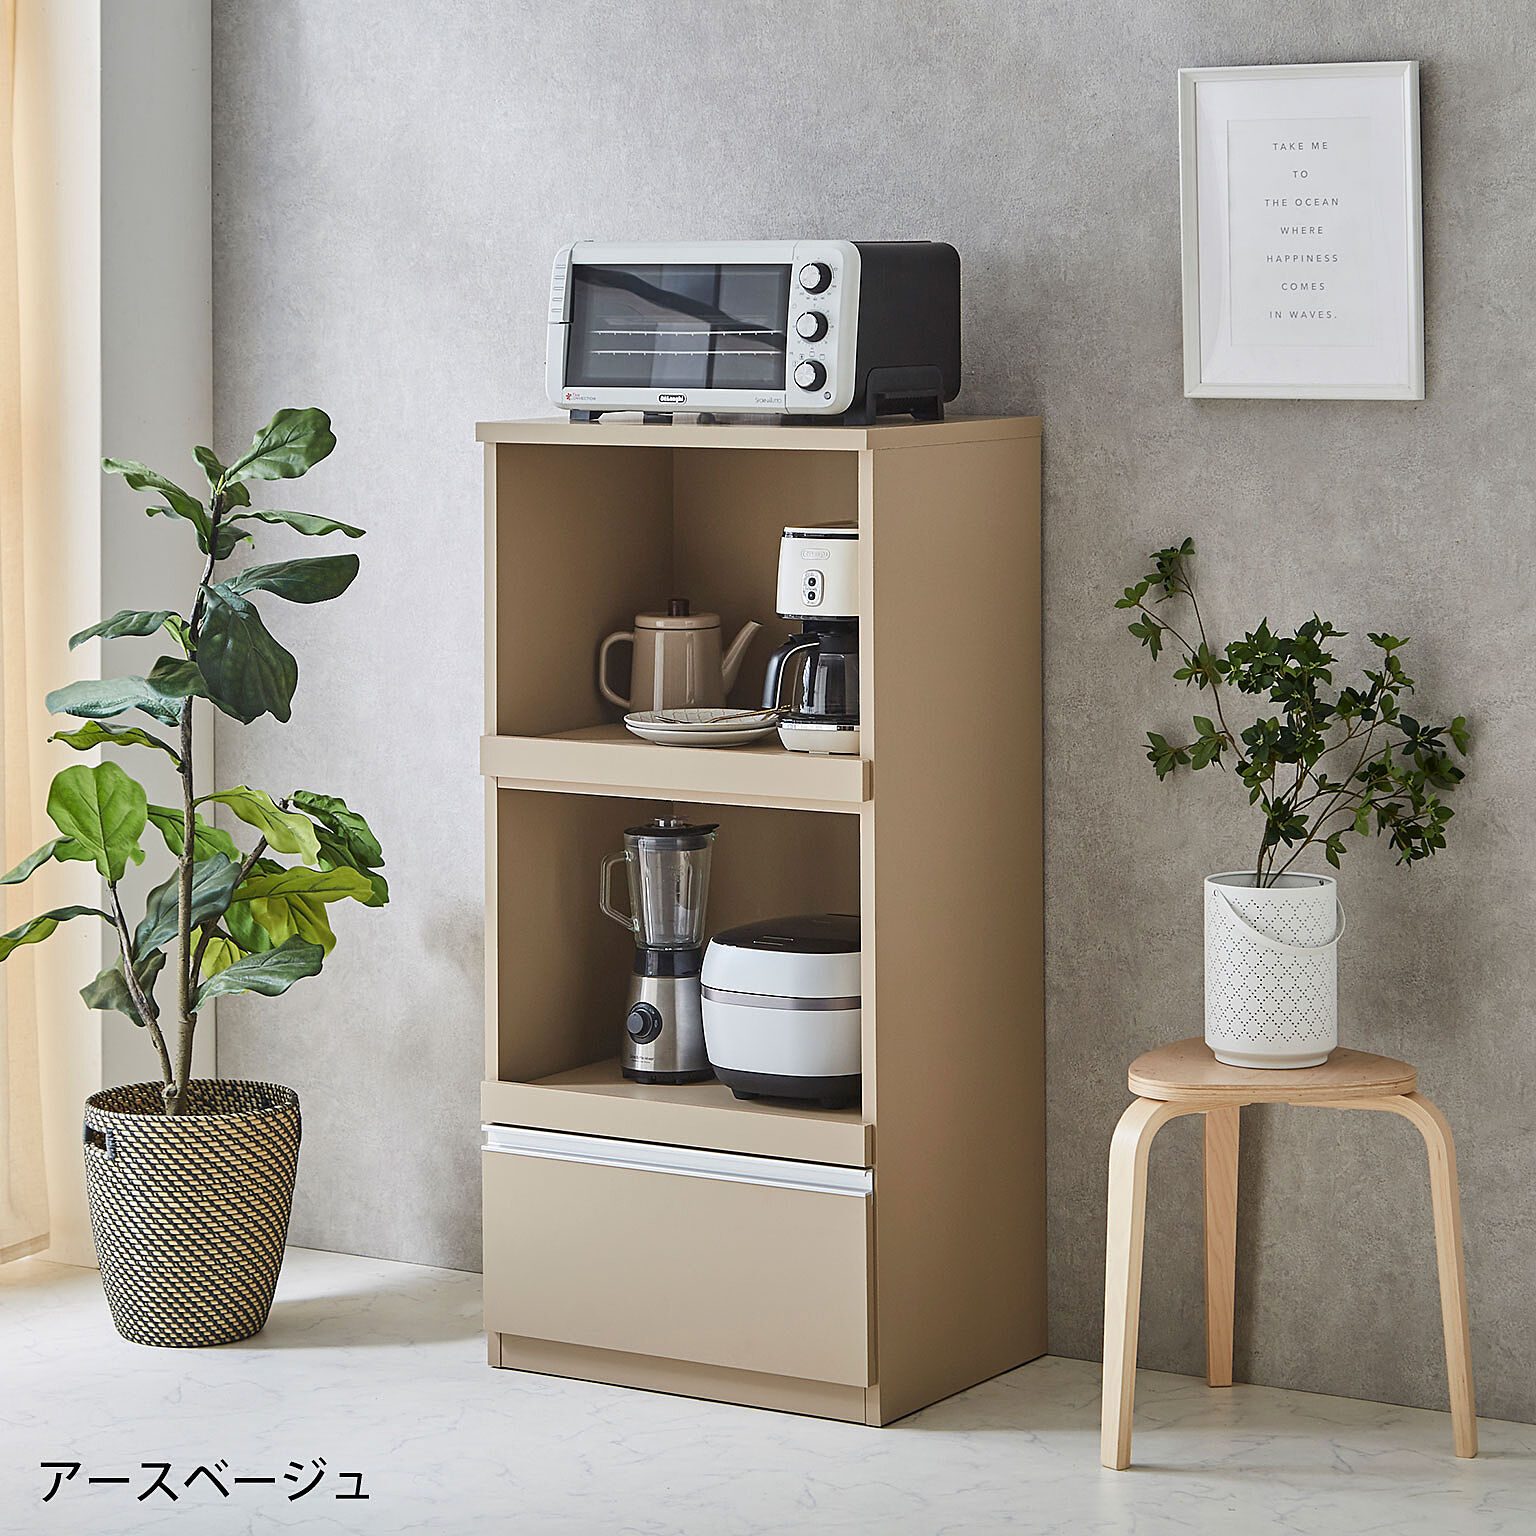 食器棚 レンジ台 レンジラック レンジボード 家電収納 スイム 幅59cm 完成品 日本製 コンパクト